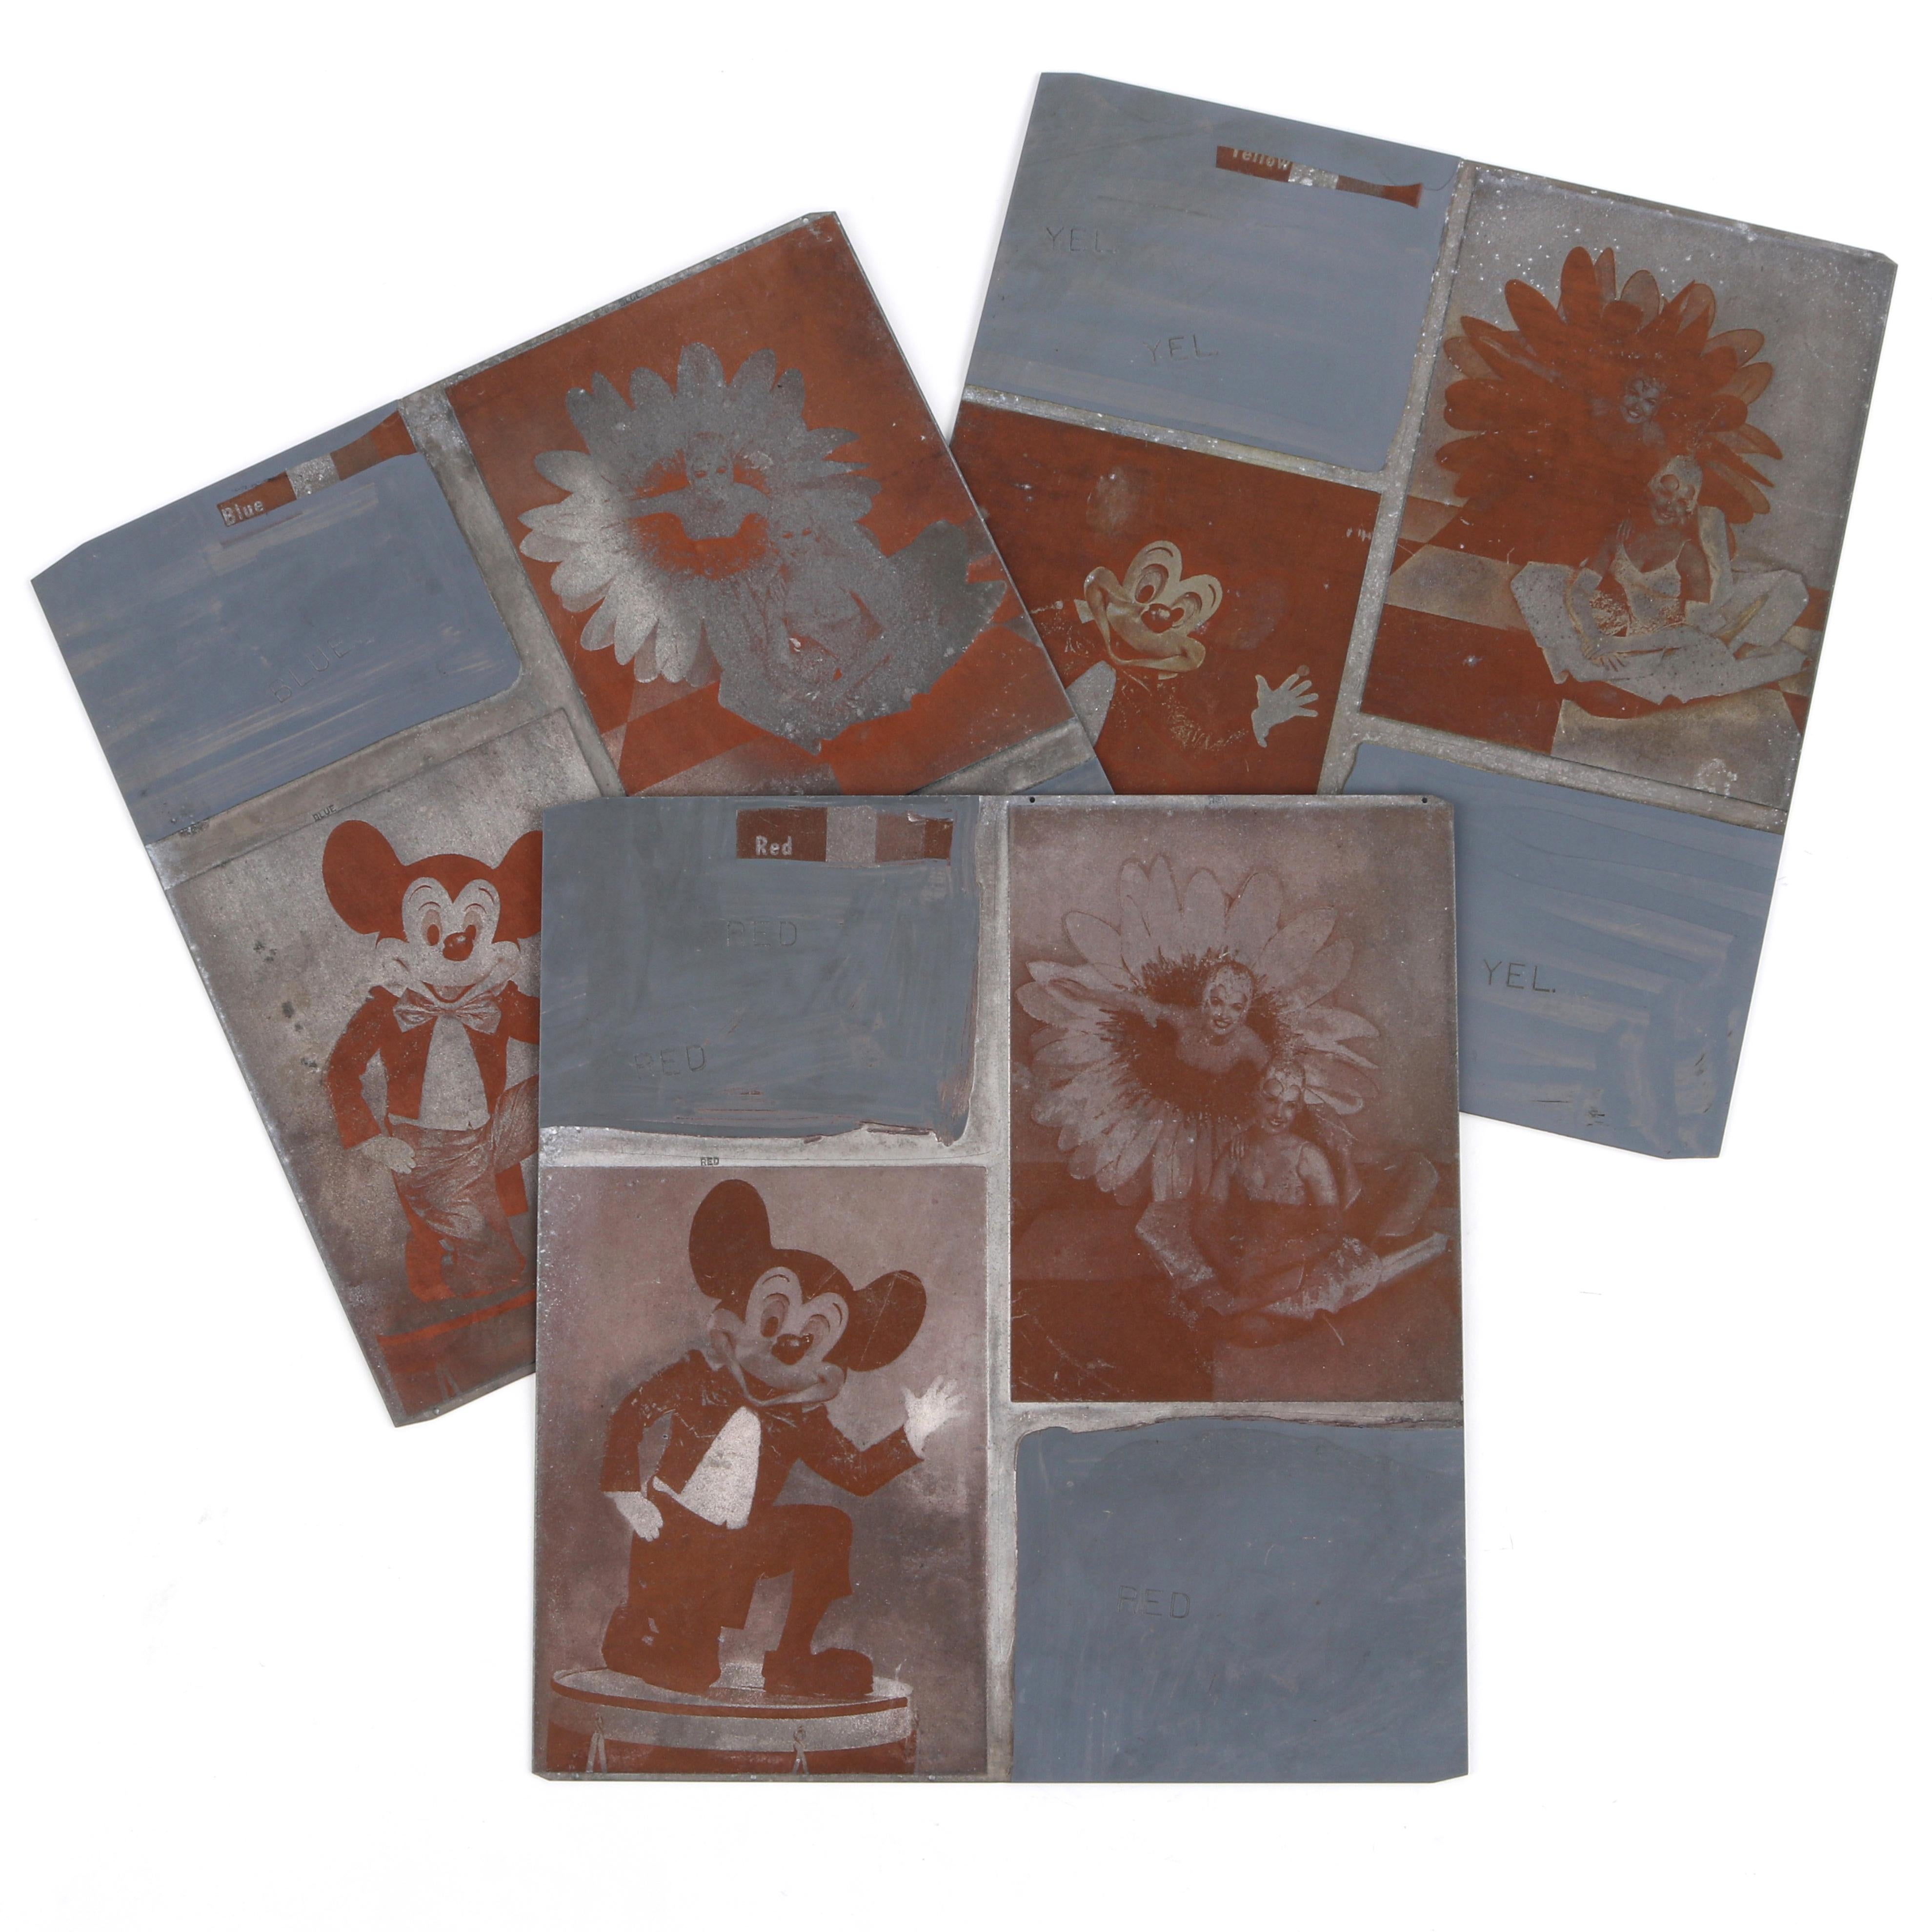 Satz von 3 Vintage Mickey Mouse & Disney themed halftone magnesium engraving plates for printing. Die Gravur ist ein Tiefdruckverfahren, bei dem Linien oder Punkte in eine Metallplatte geschnitten werden, um die Farbe aufzunehmen. Die Farbe wird